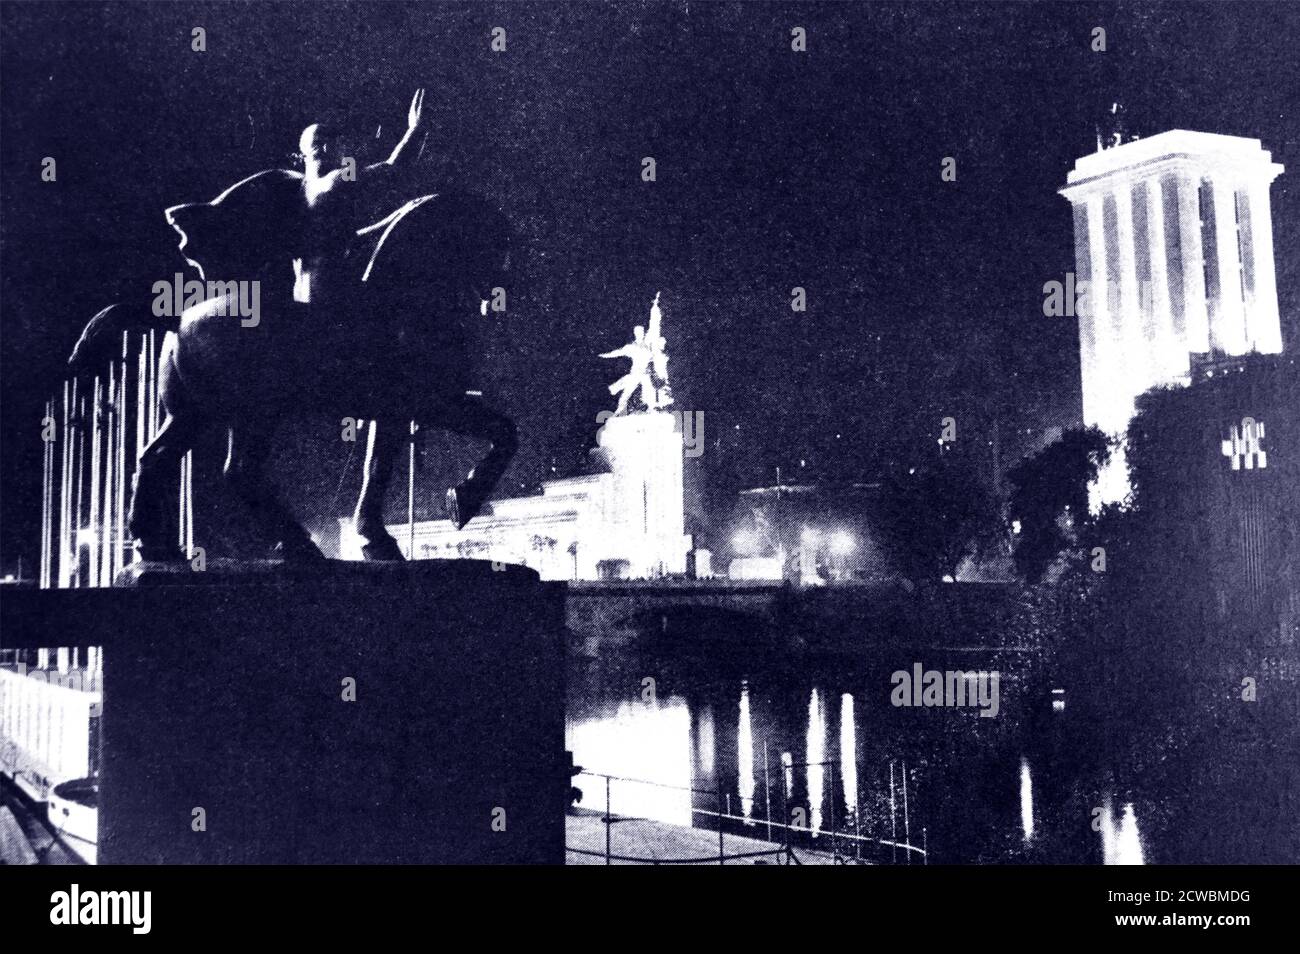 Photographies en noir et blanc de l'exposition universelle (Foire mondiale) à Paris en 1937; l'exposition de nuit. À gauche se trouve le pavillon russe et l'allemand en face ; ils semblent se défier les uns les autres. Banque D'Images